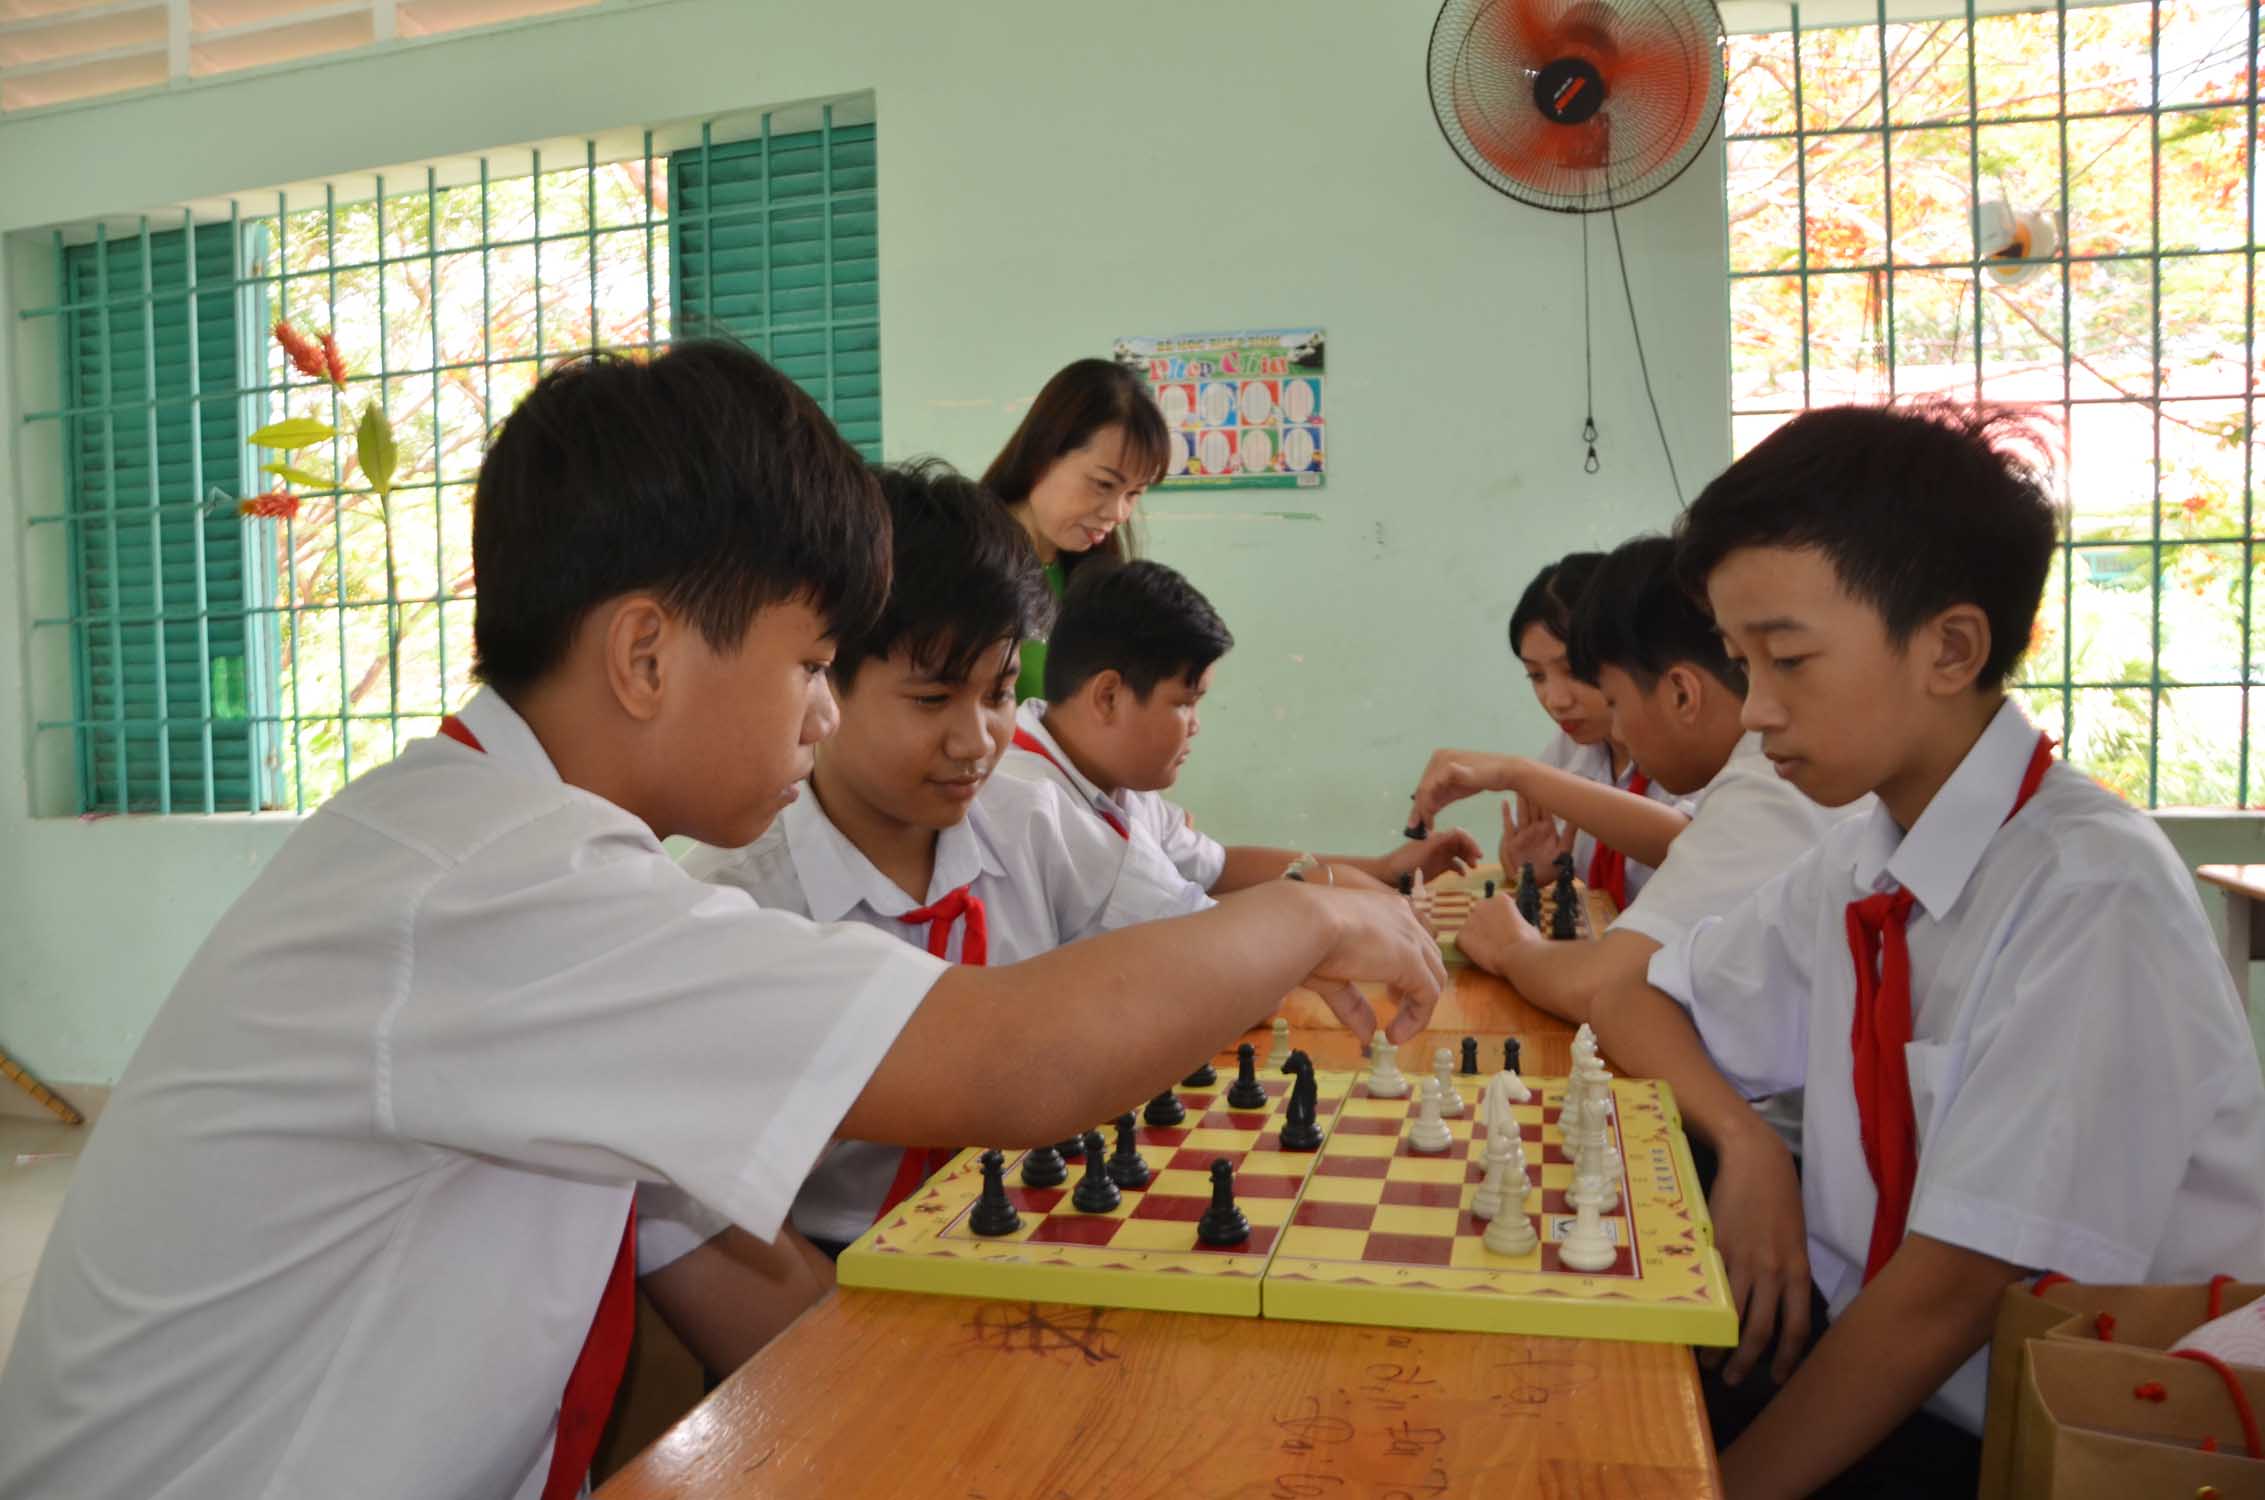 Ngoài giờ học, các GV còn hướng dẫn trẻ tham gia các hoạt động nâng cao thể chất, trí tuệ và kỹ năng sống. Các em HS lớp 5 chơi cờ vua, vừa giải trí, vừa giúp các em thân thiết hơn.